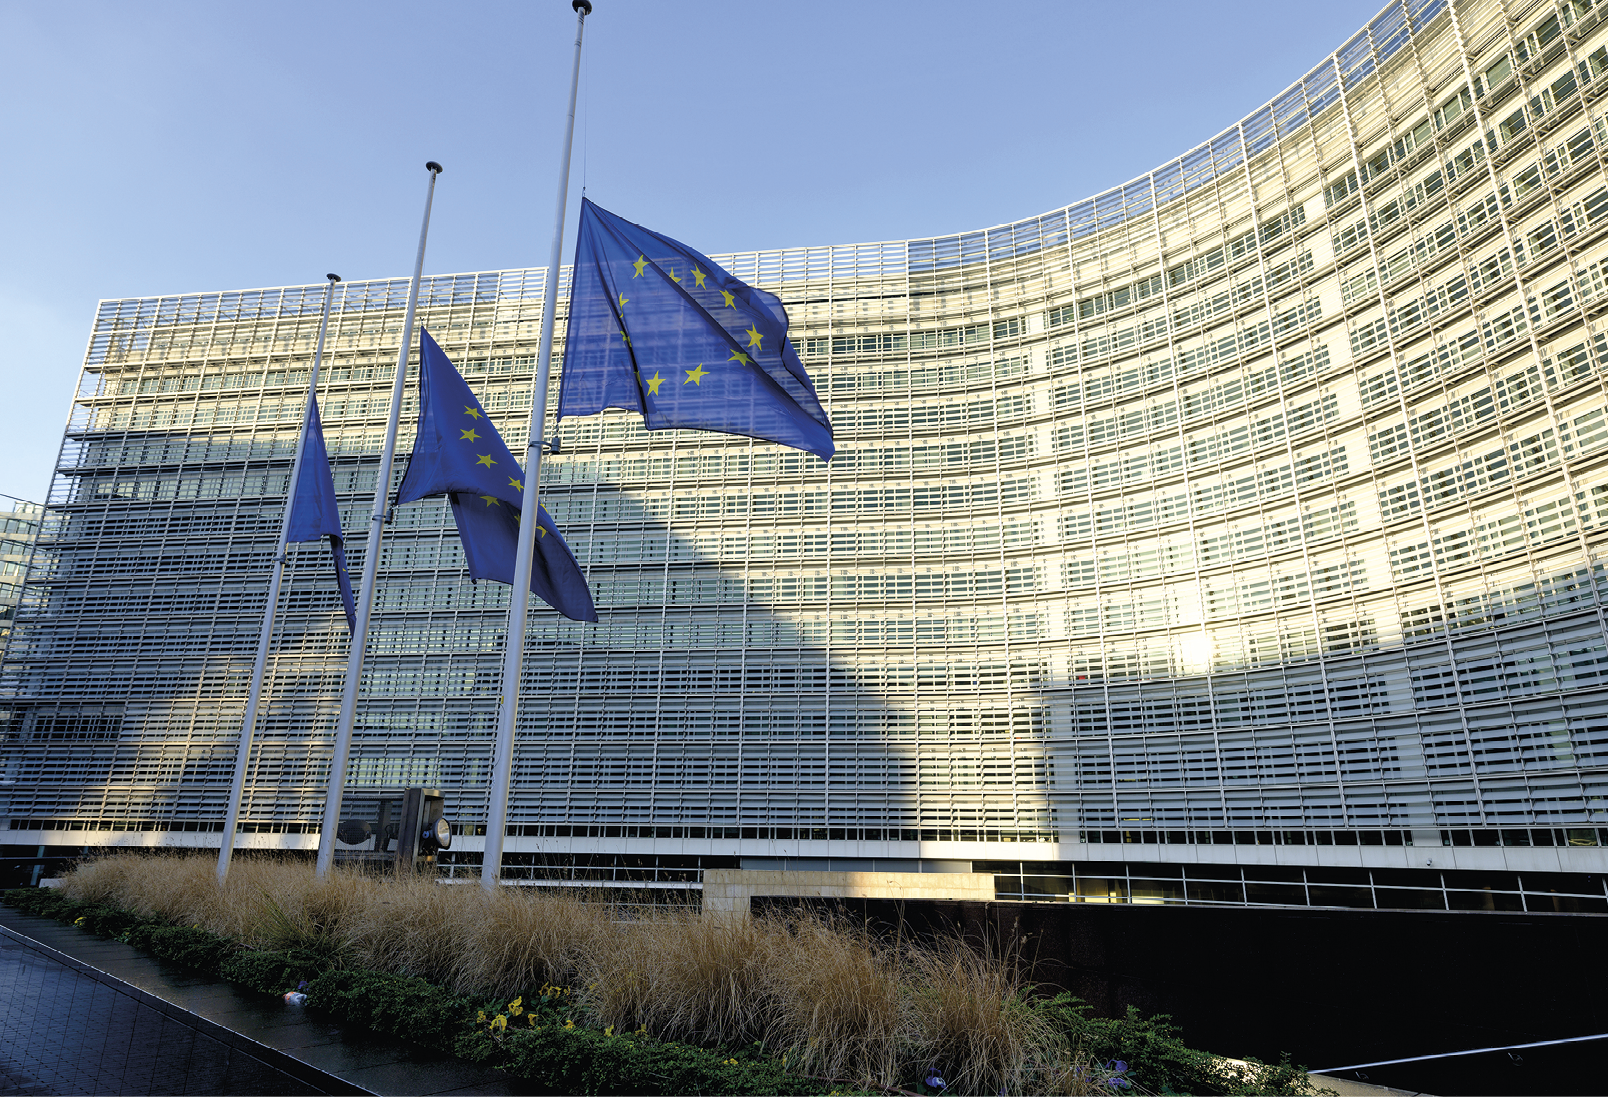 Fotografia. No primeiro plano, destaque para três mastros com as bandeiras da União Europeia sobre um pequeno jardim. Ao fundo, fachada de vidro do edifício-sede da Comissão Europeia.